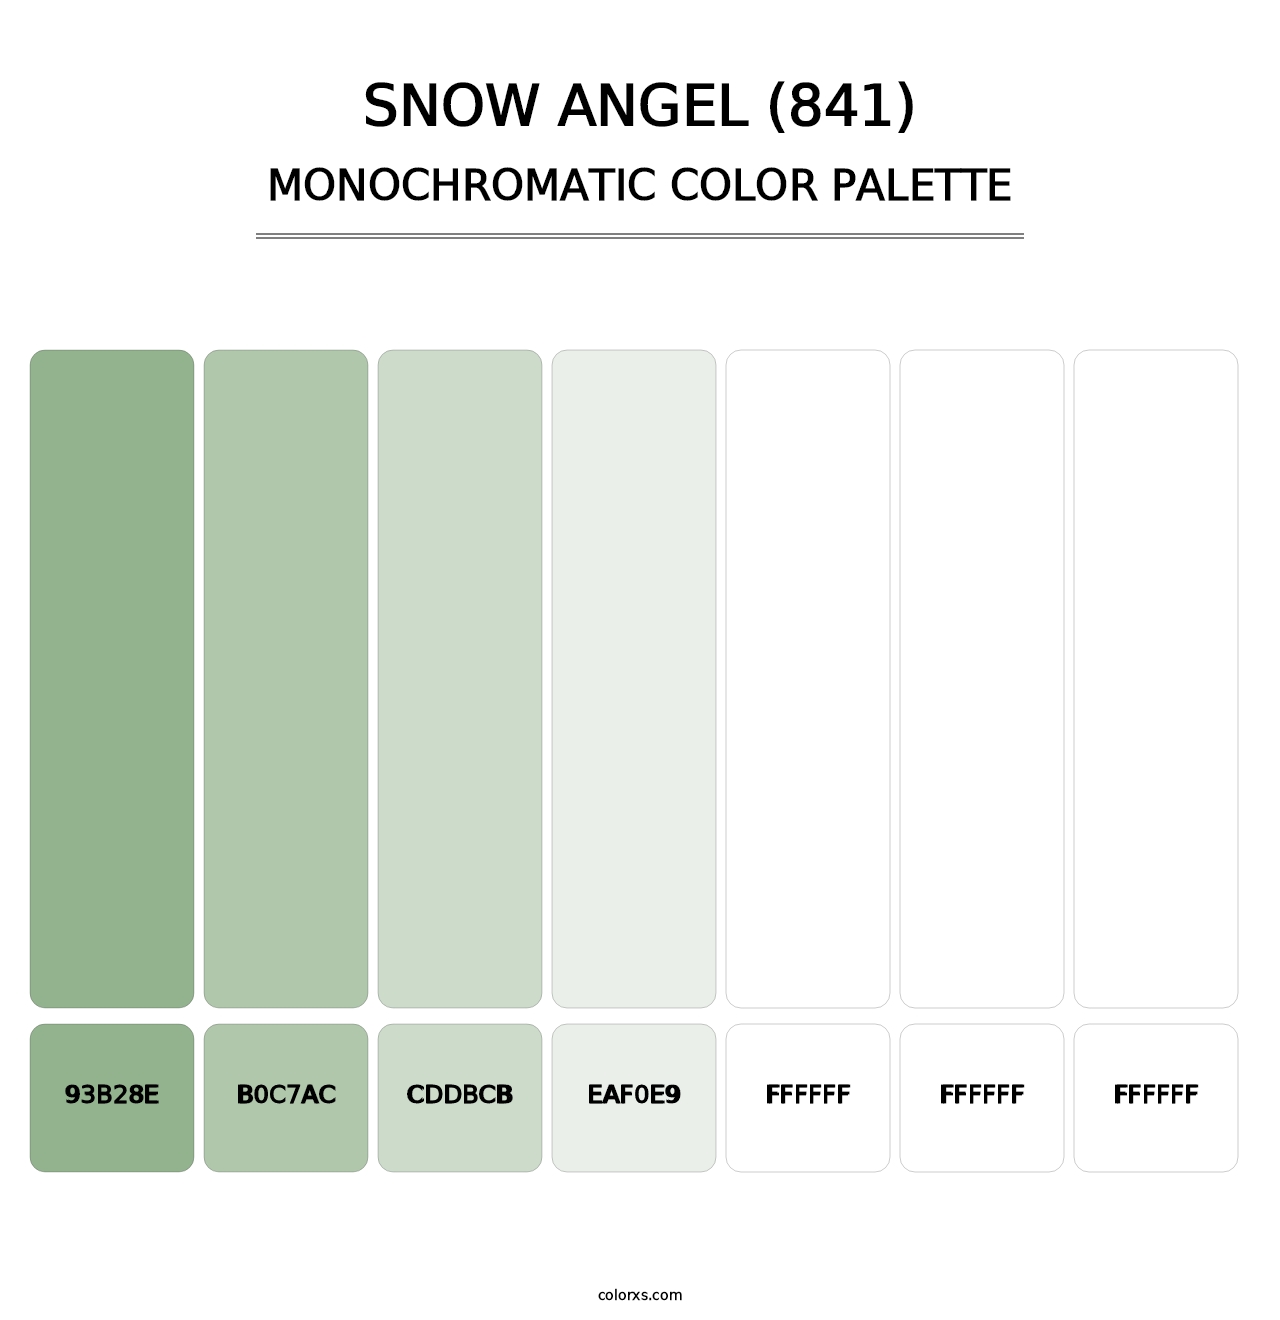 Snow Angel (841) - Monochromatic Color Palette